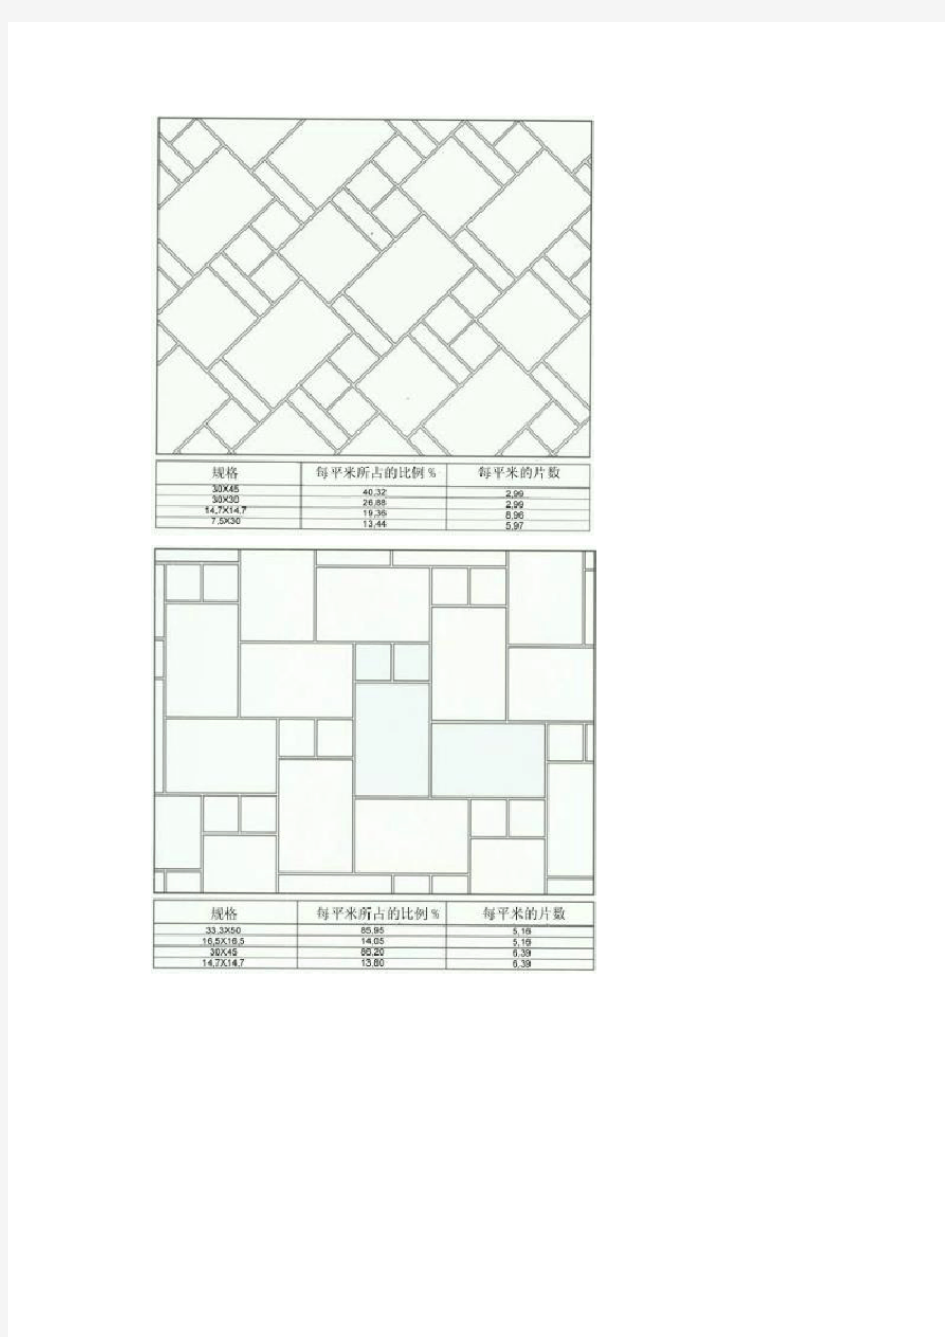 瓷砖拼花铺设的80种设计方案